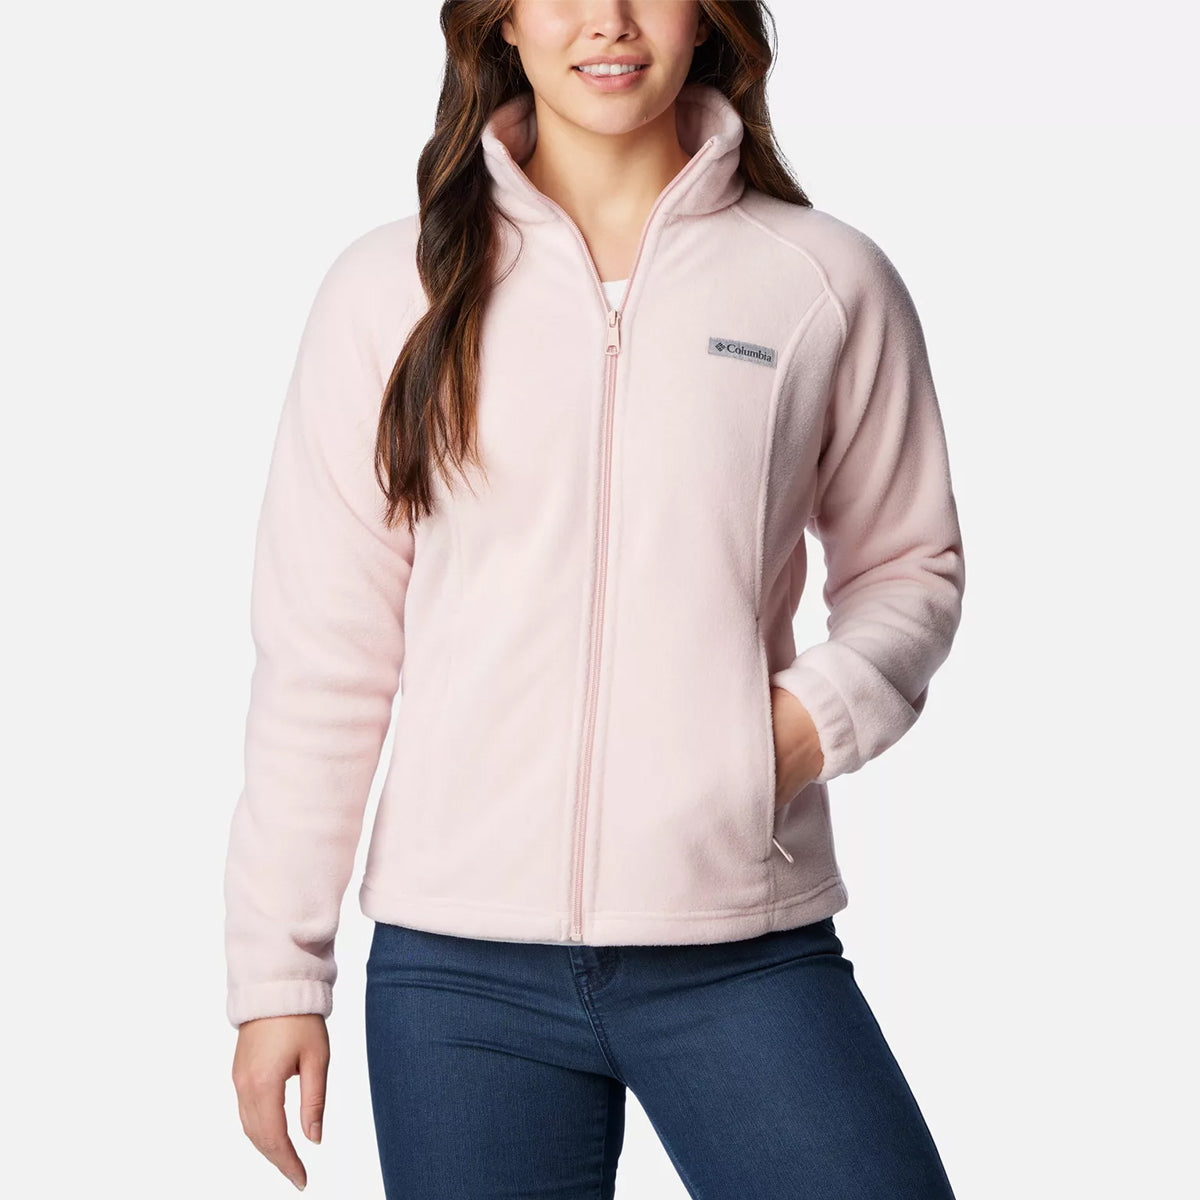 Columbia Women's Benton Springs Full Zip Fleece Jacket 1372111 – Good's  Store Online